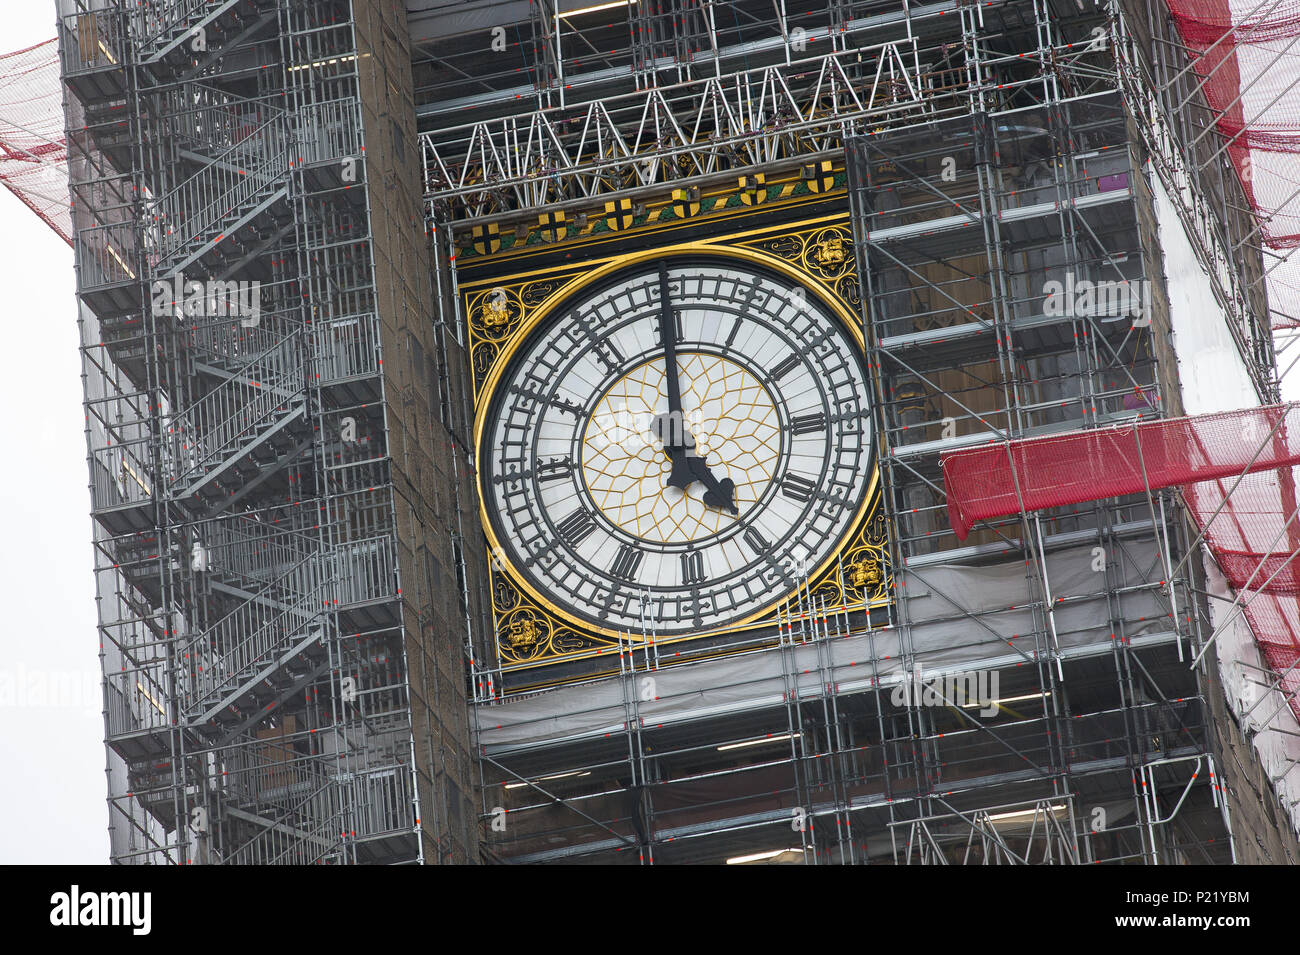 Einrüstung umgibt das Zifferblatt des Big Ben Elizabeth Tower Palace of Westminster Häuser des Parlaments während der Renovierungsarbeiten Reparaturen und Restaurationen Stockfoto